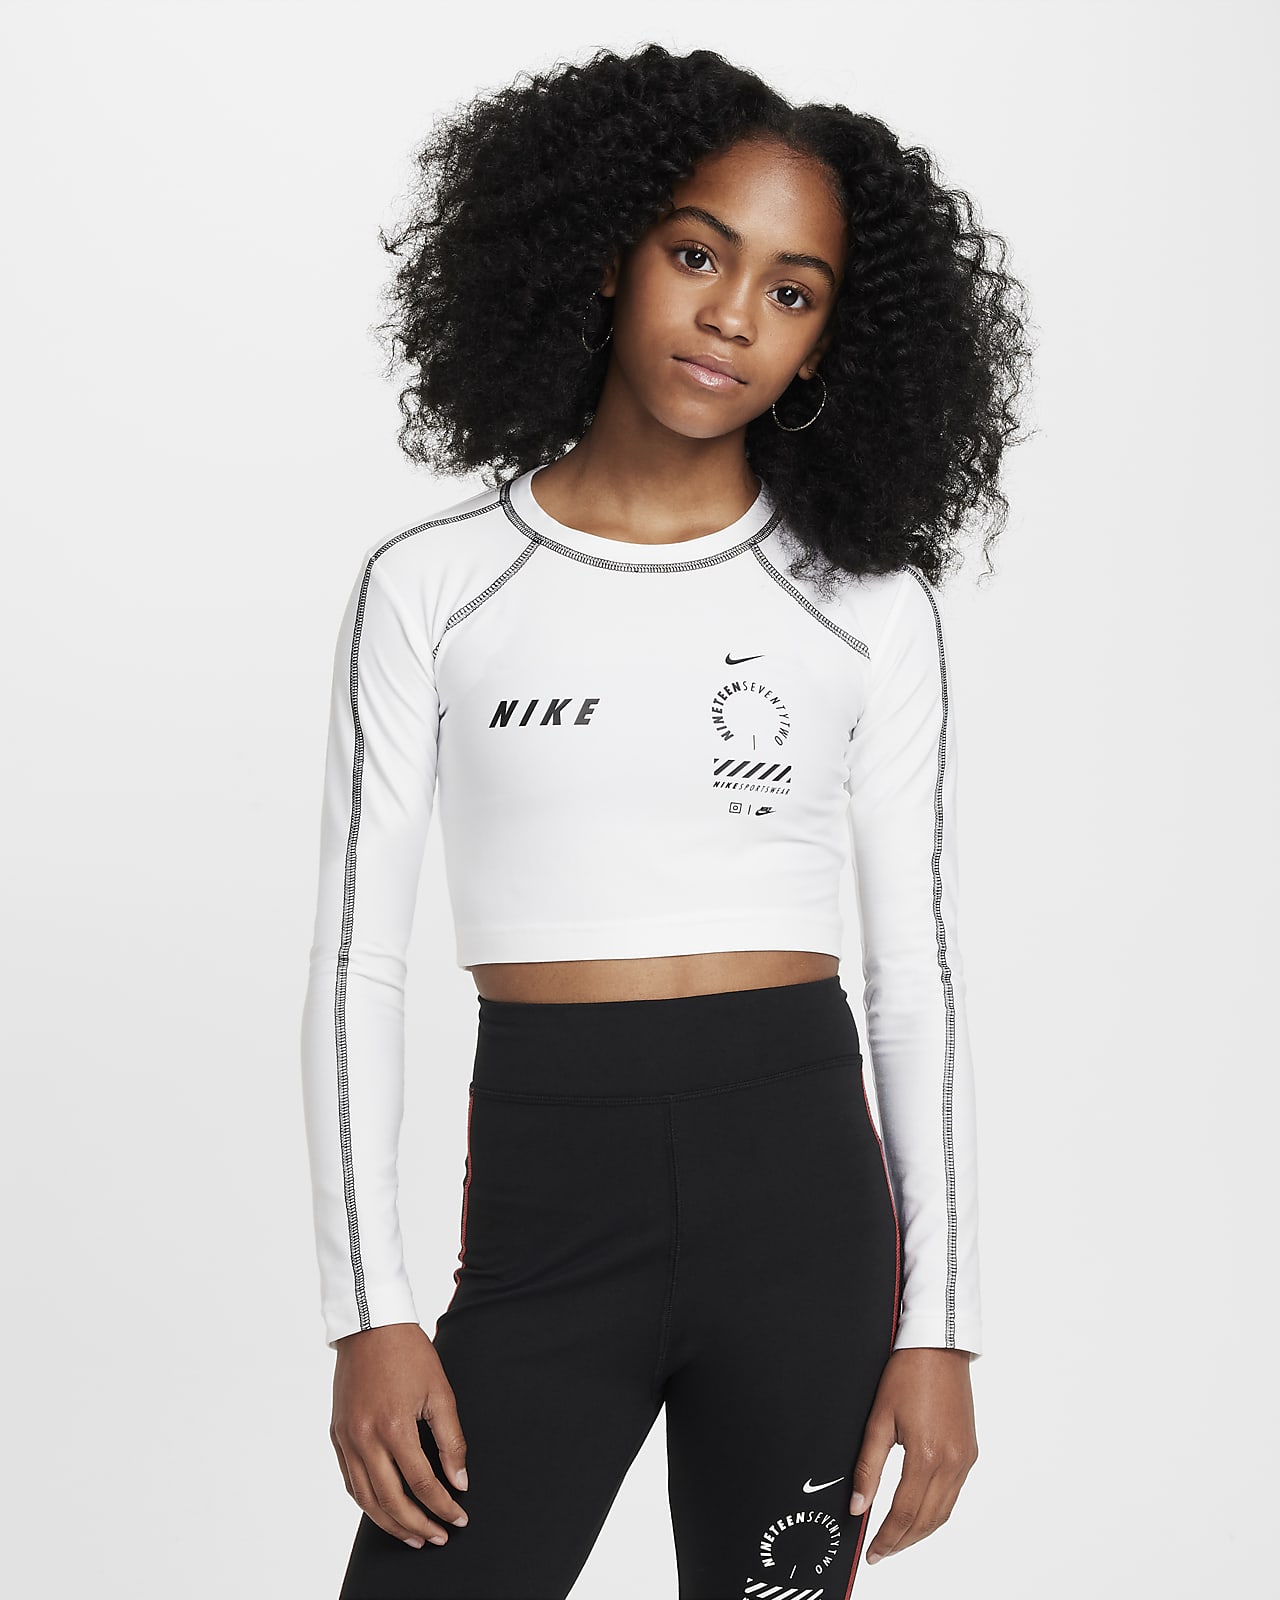 Nike Sportswear Girls' Long-Sleeve Crop Top